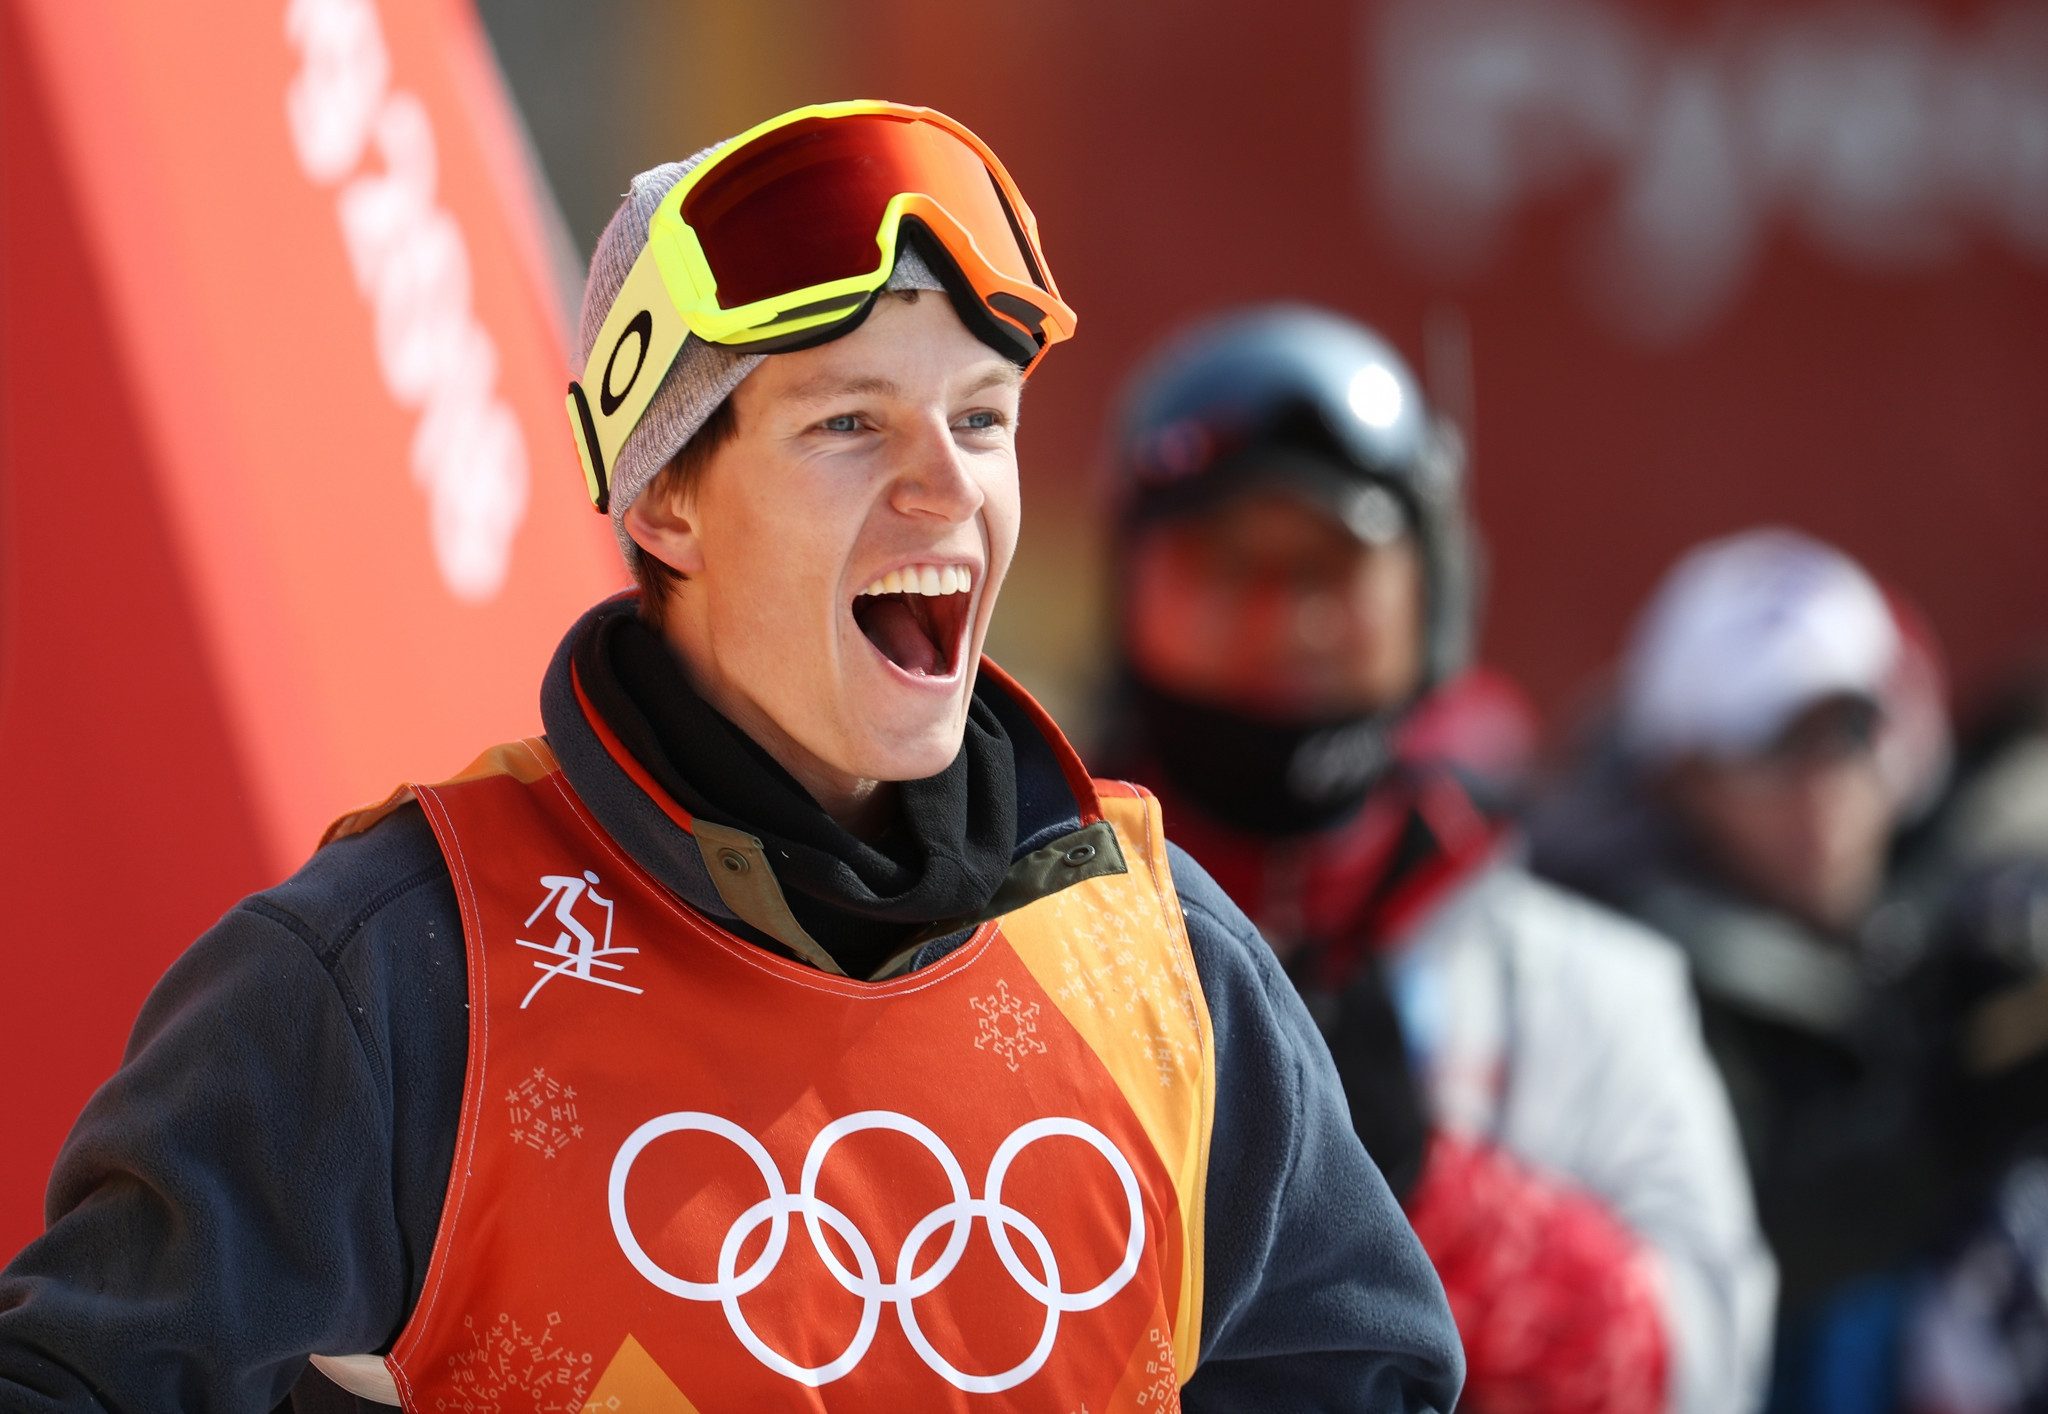 Norway's Braaten secures men's ski slopestyle title at Pyeongchang 2018